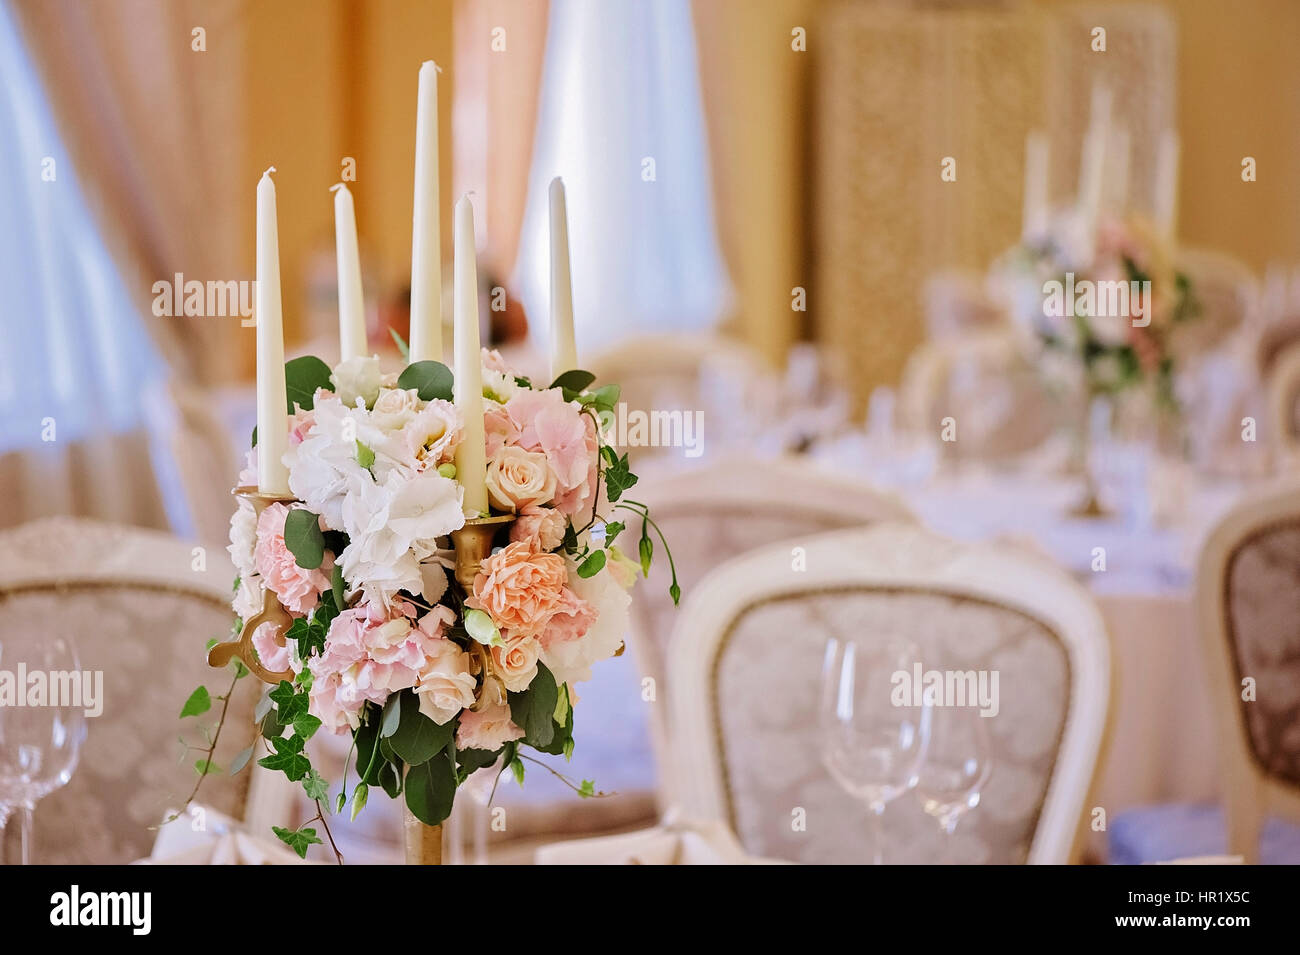 Gast-Tabellen mit Kerze in reich dekorierten Hochzeitszimmer Bankett Stockfoto